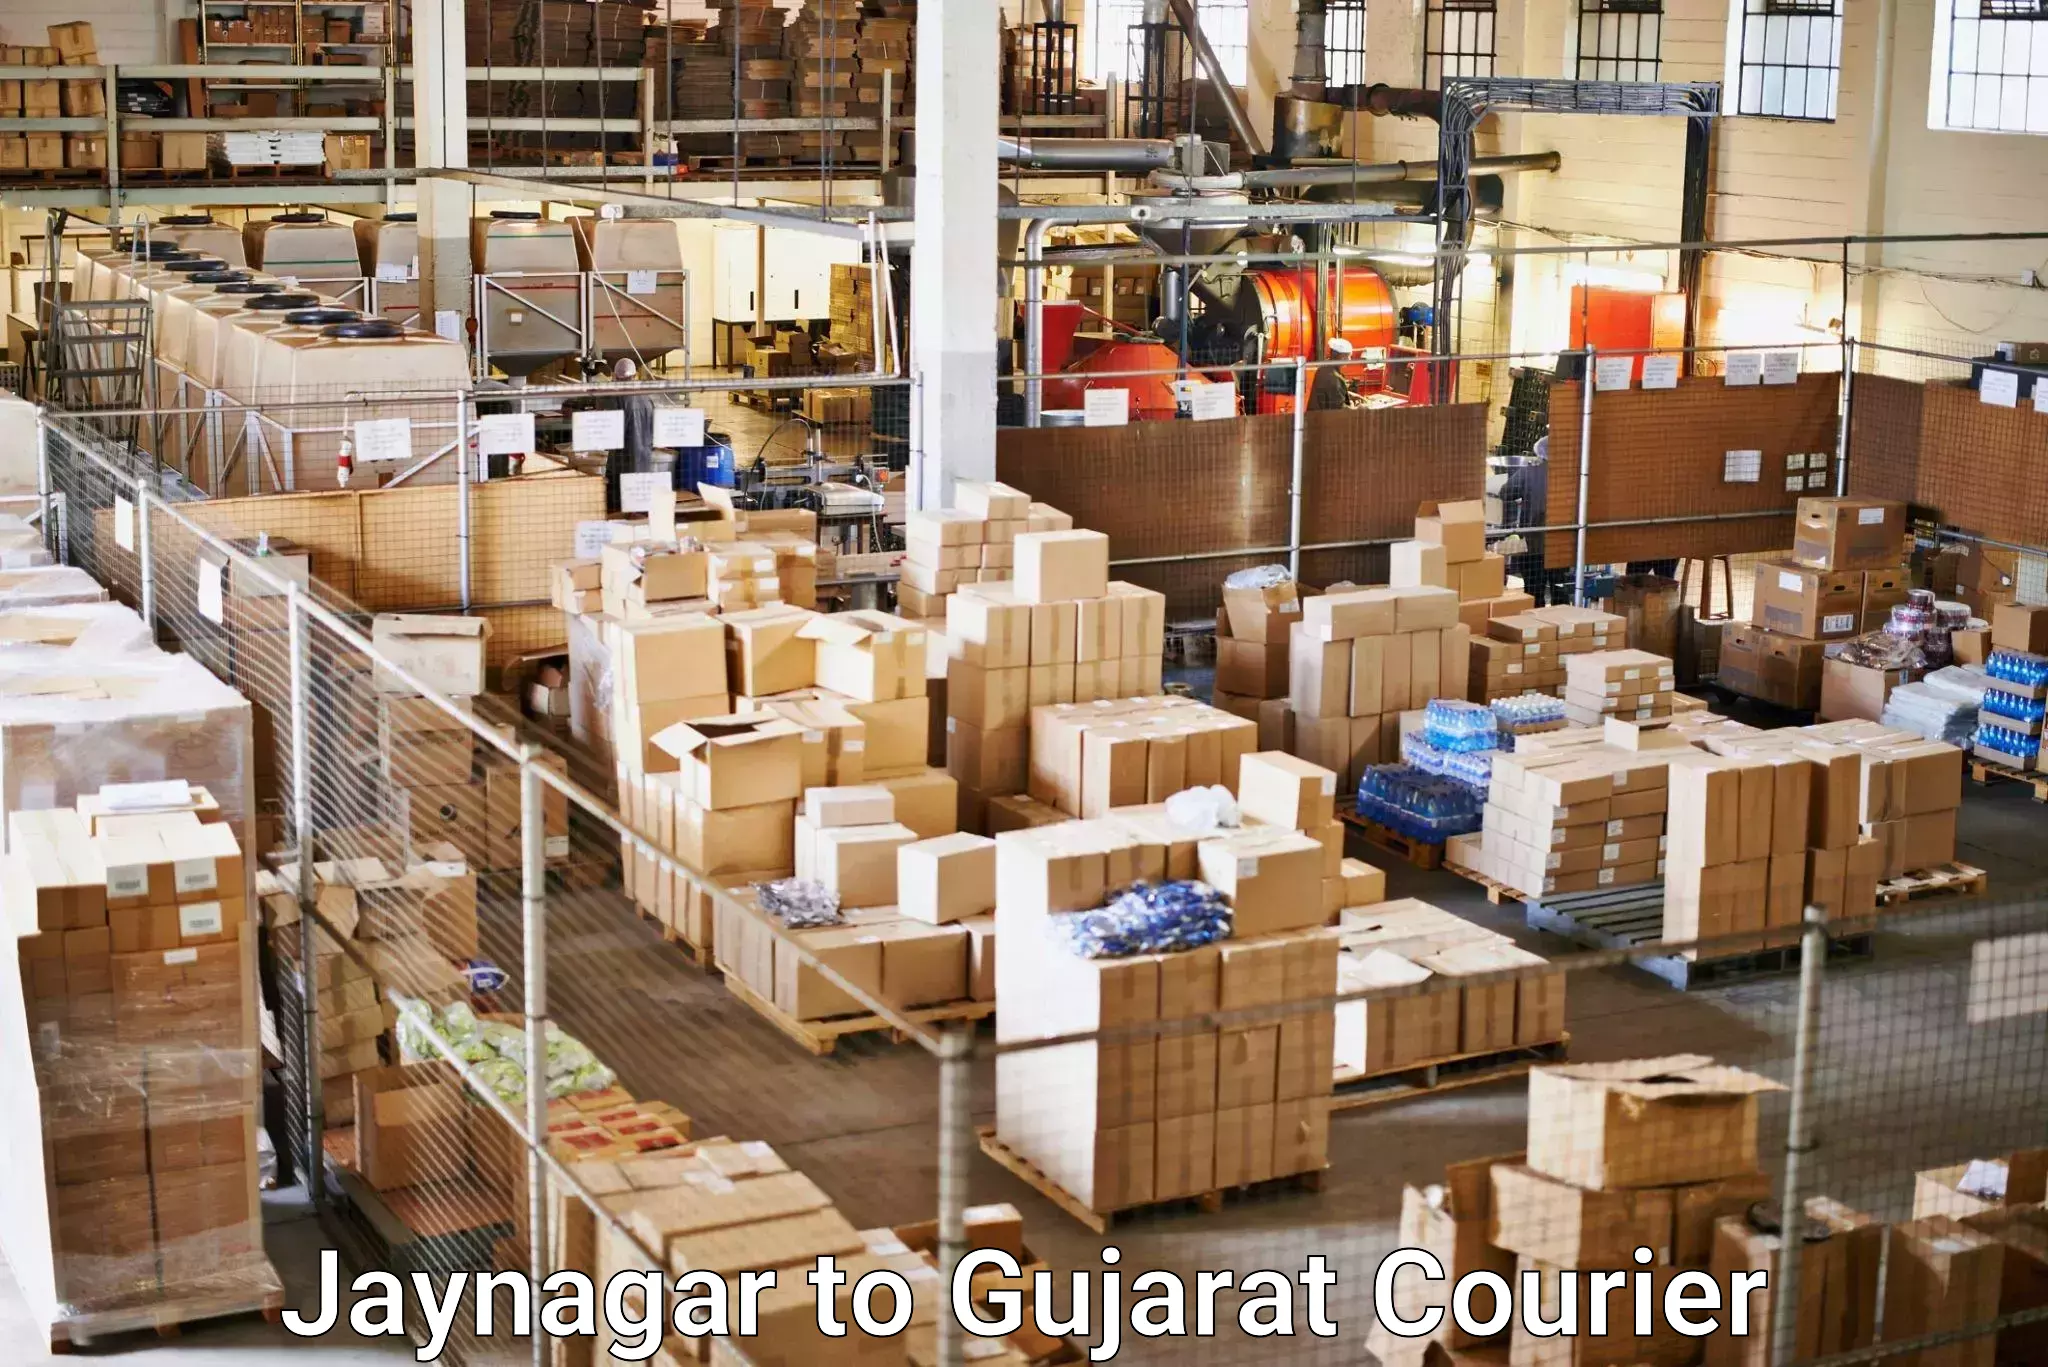 Reliable delivery network Jaynagar to Himatnagar